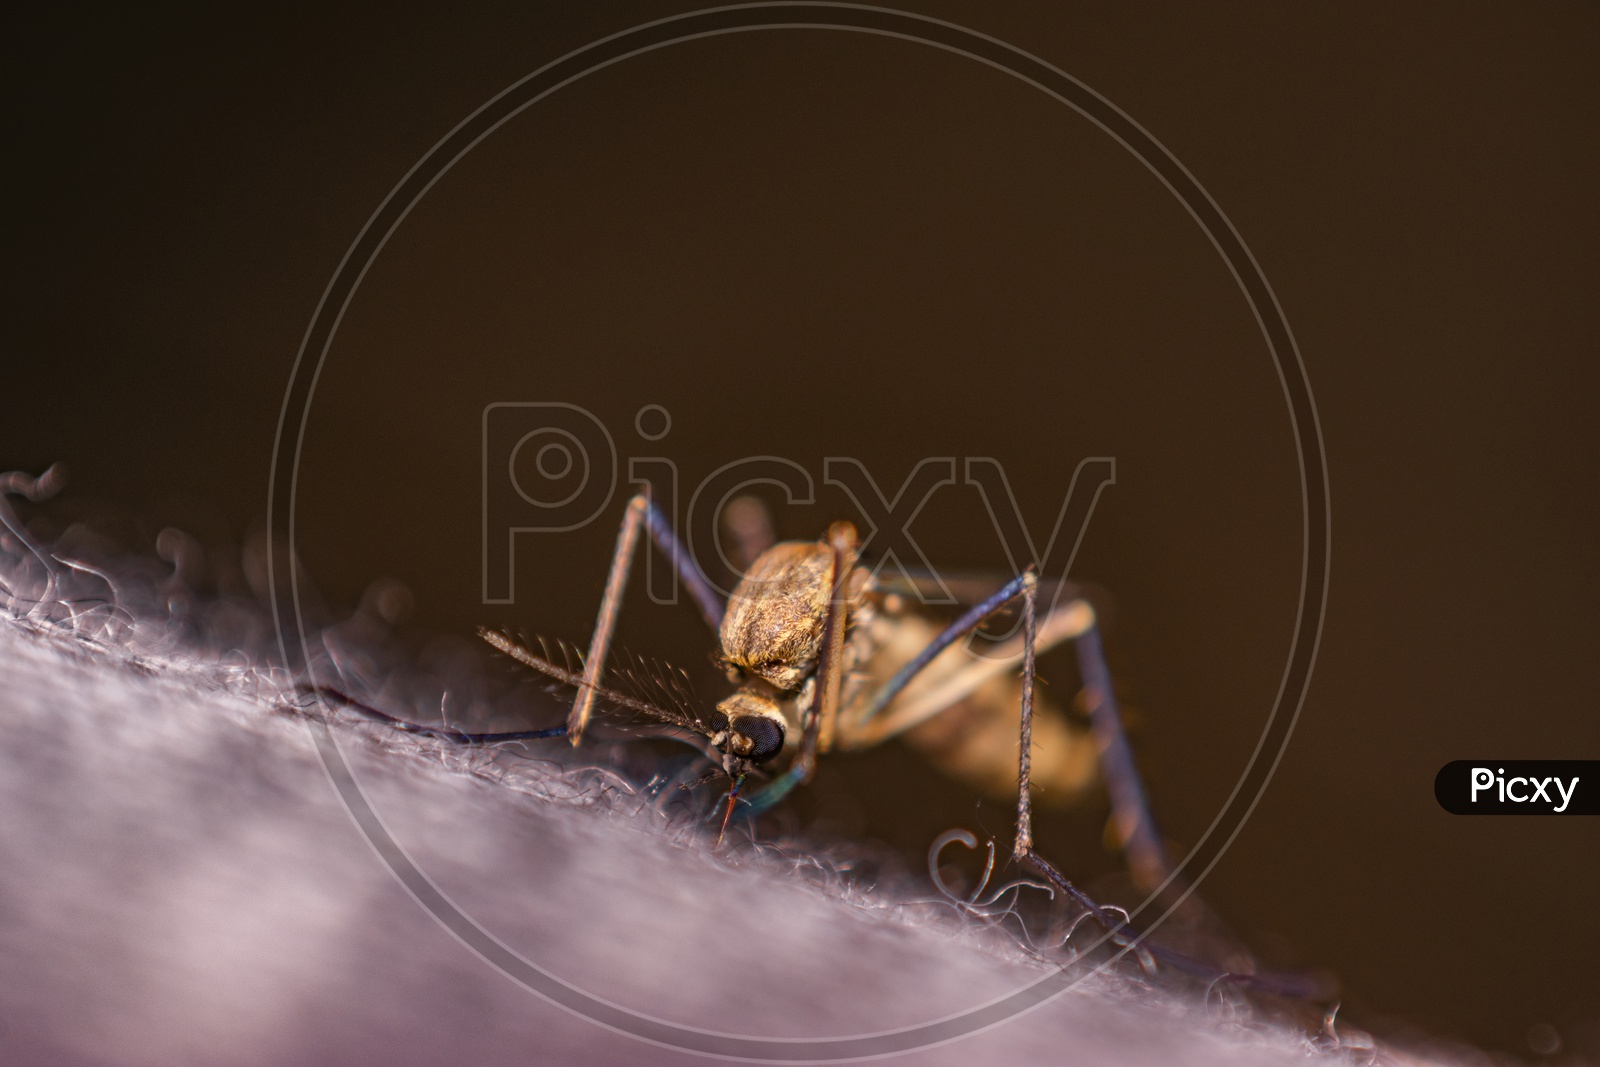 Mosquito biting a person causing dengue, malaria, fever